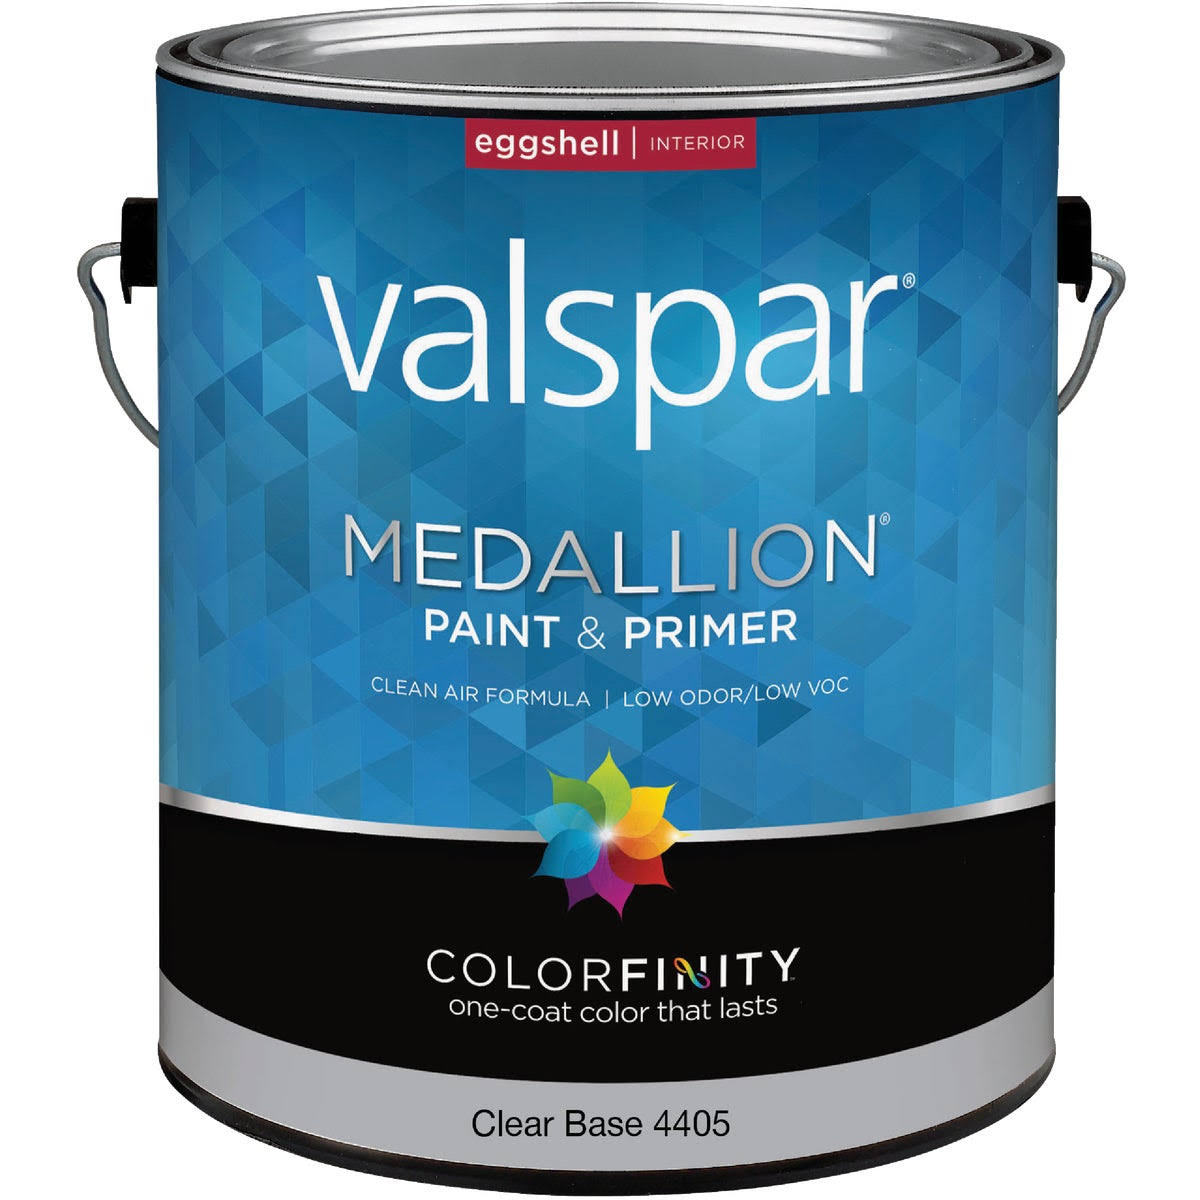 Valspar Paint Clear Base Medallion Interior Acrylic Latex Paint - Eggshell